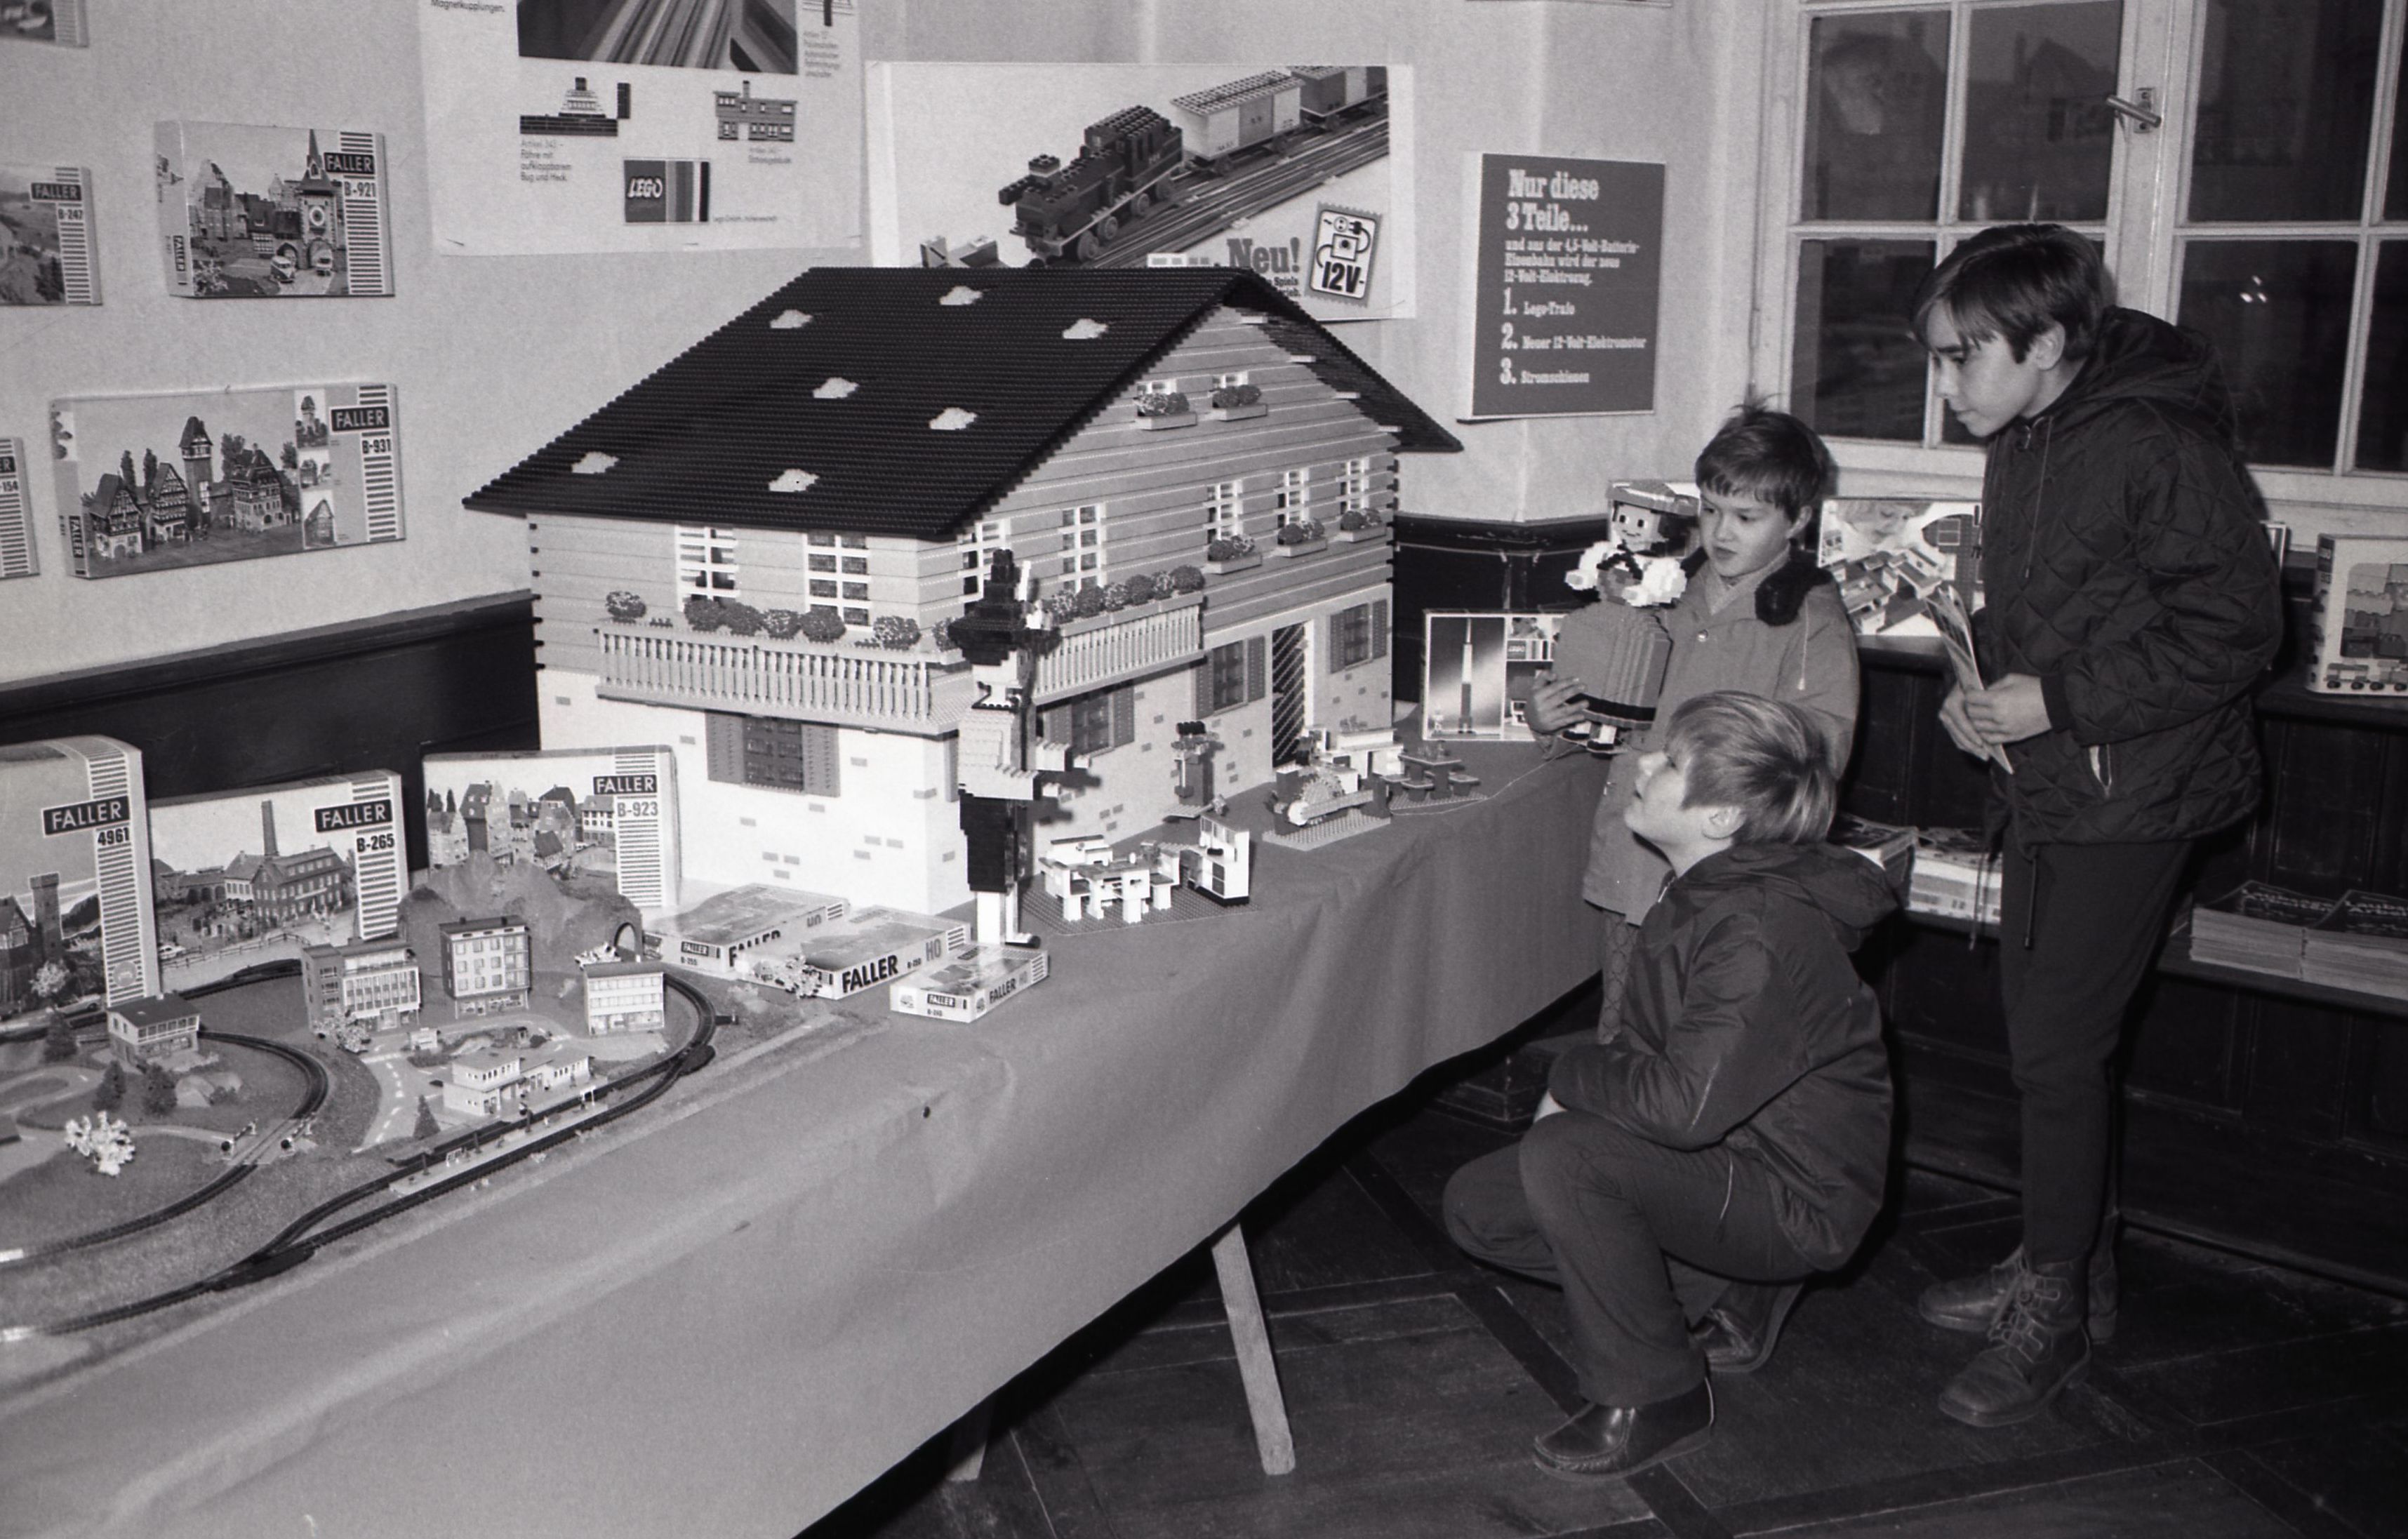 Spielzeugausstellung im Haus Löwenberg, Kinder bestaunen ein großes Spielzeughaus, Bilder von Friedrich Strohm